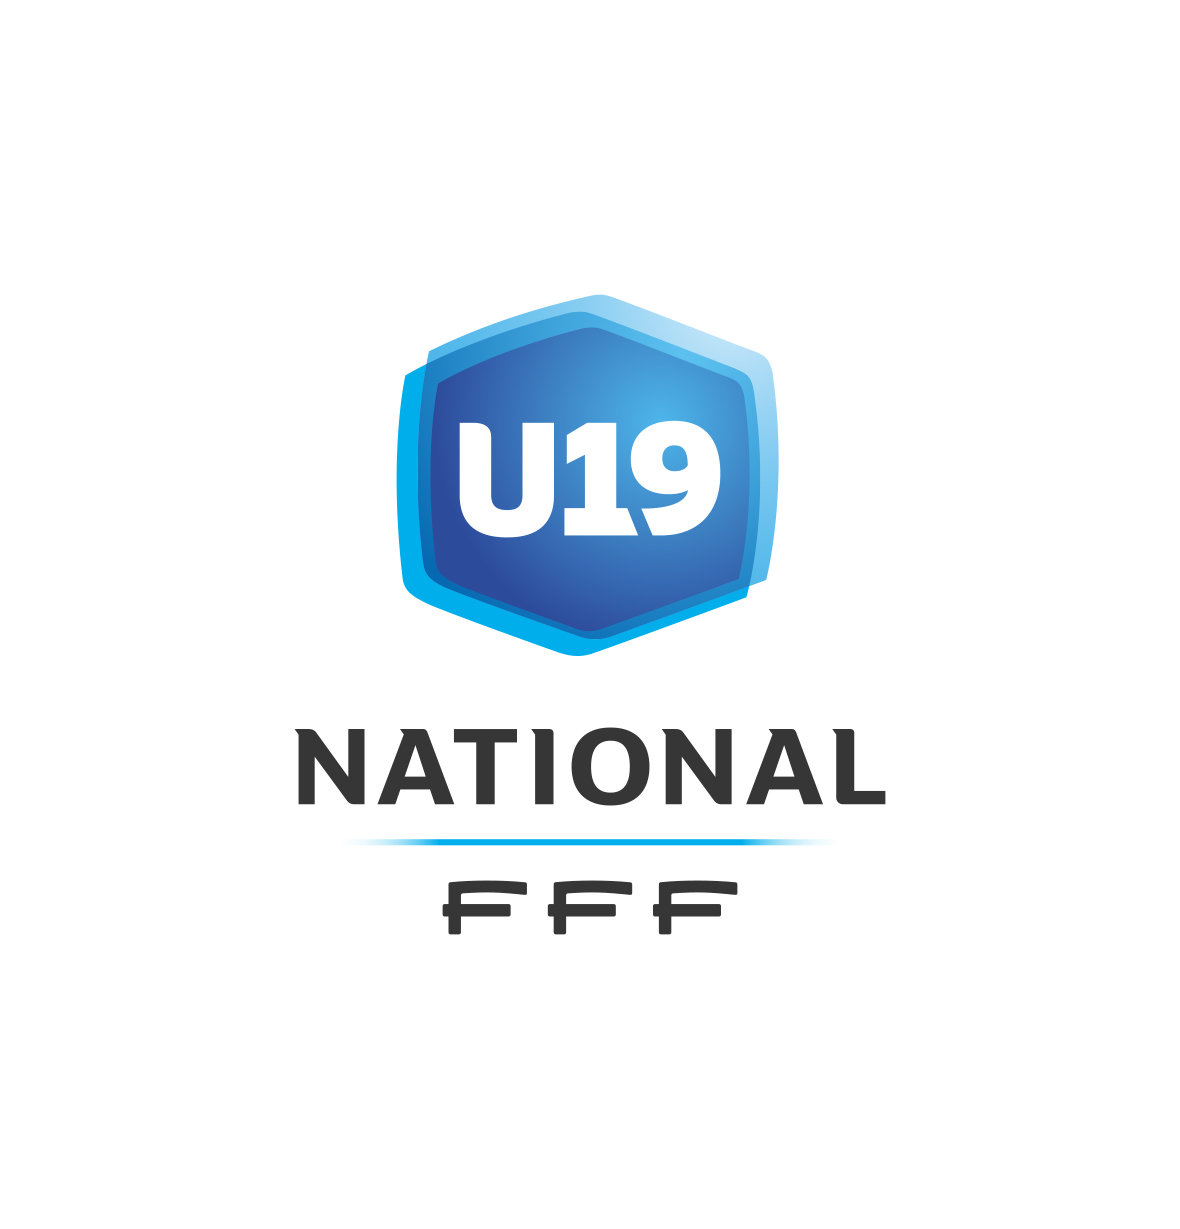 Cfa Girondins : Les résultats et le classement (U19, J6) - Formation Girondins 